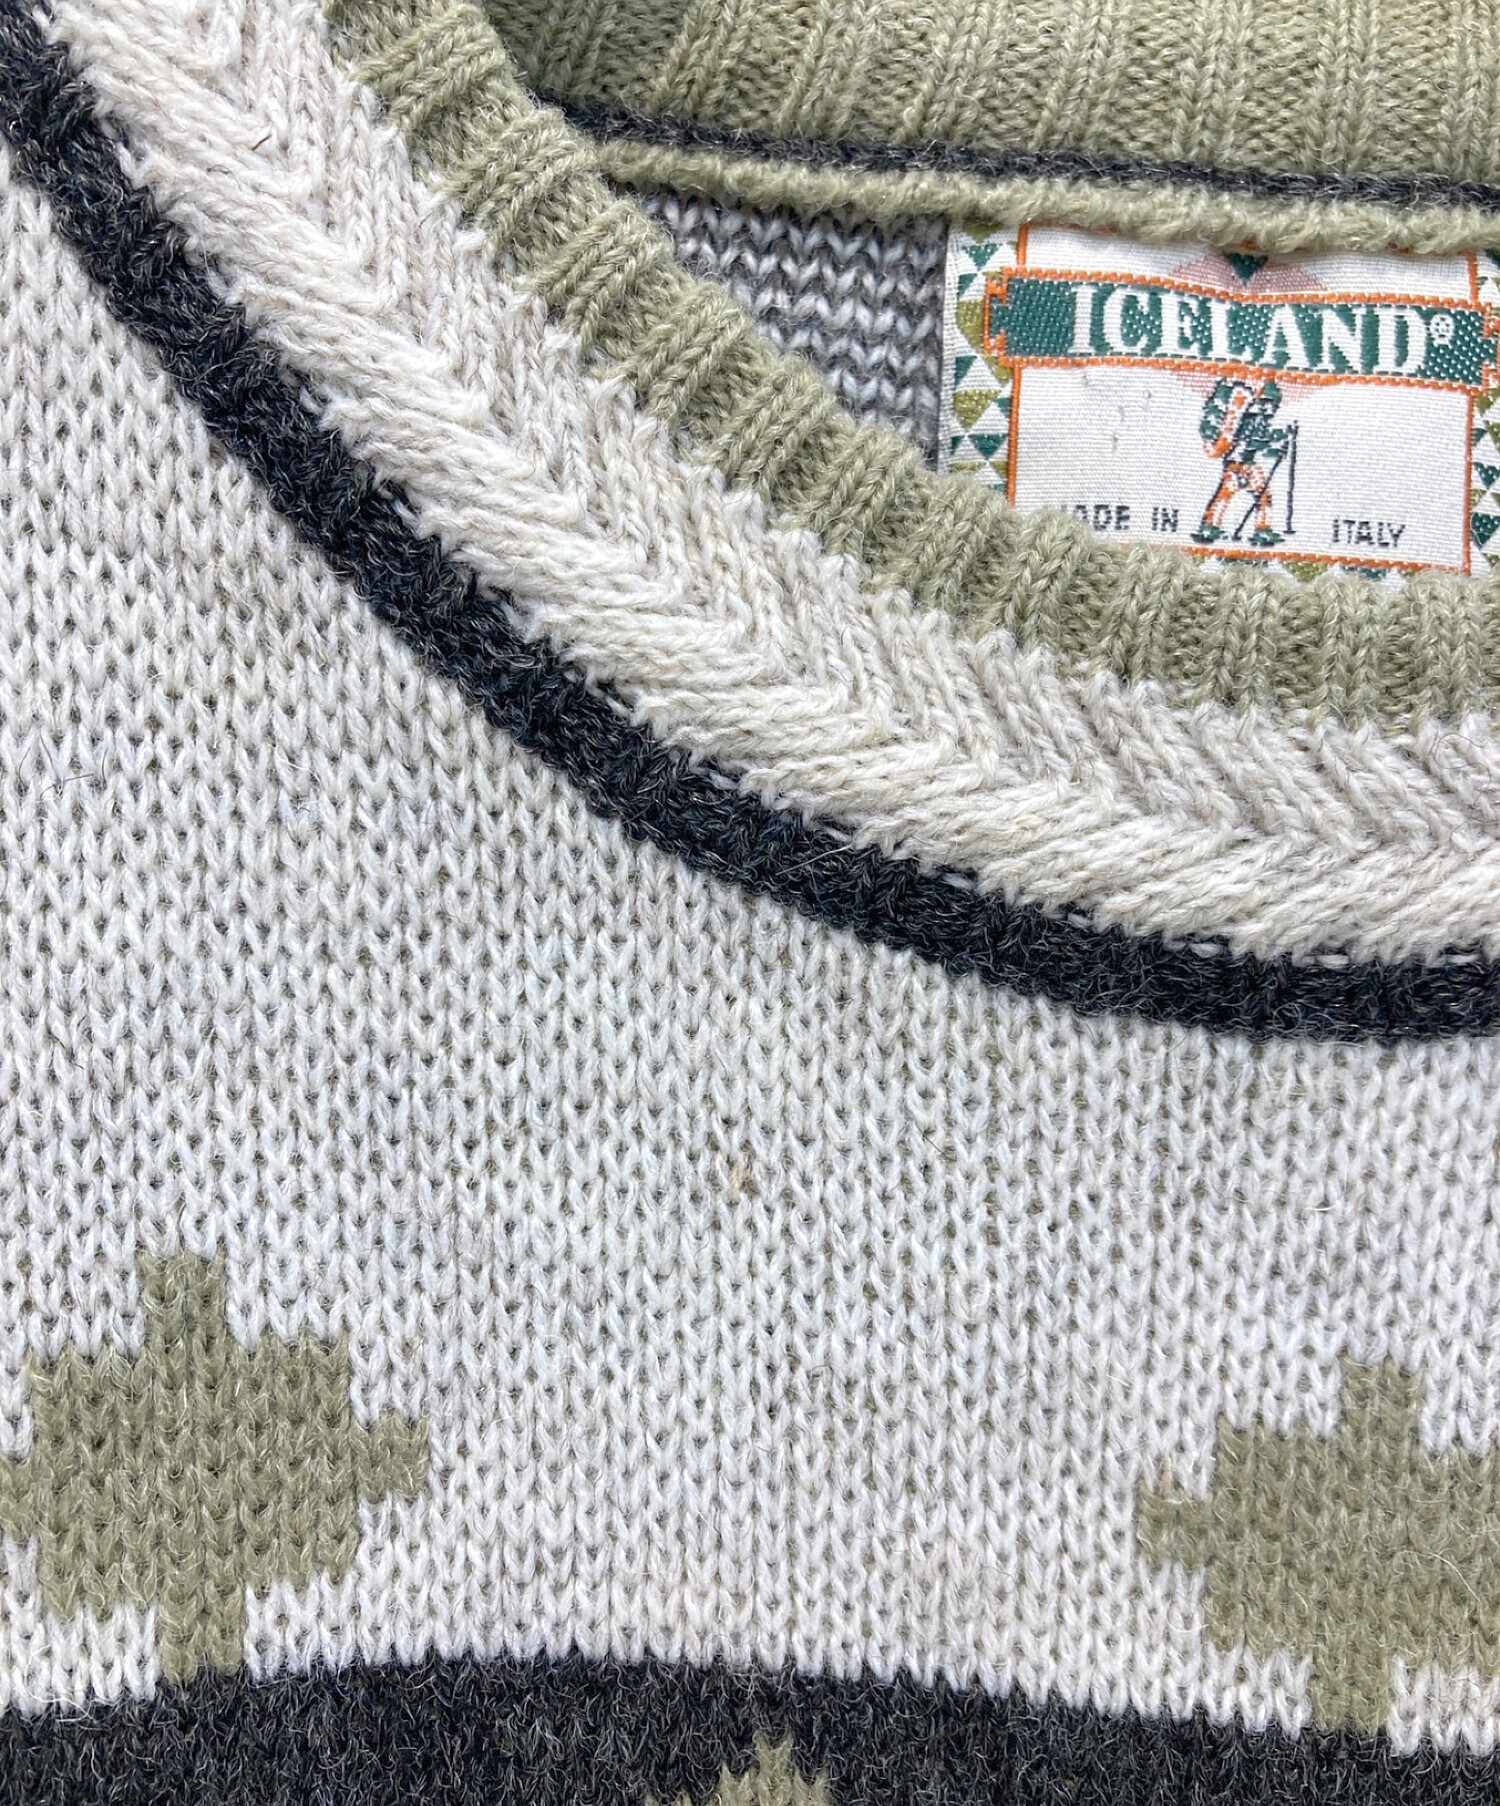 ICELAND (アイスランド) レトロ刺繍セーター アイボリー サイズ:48